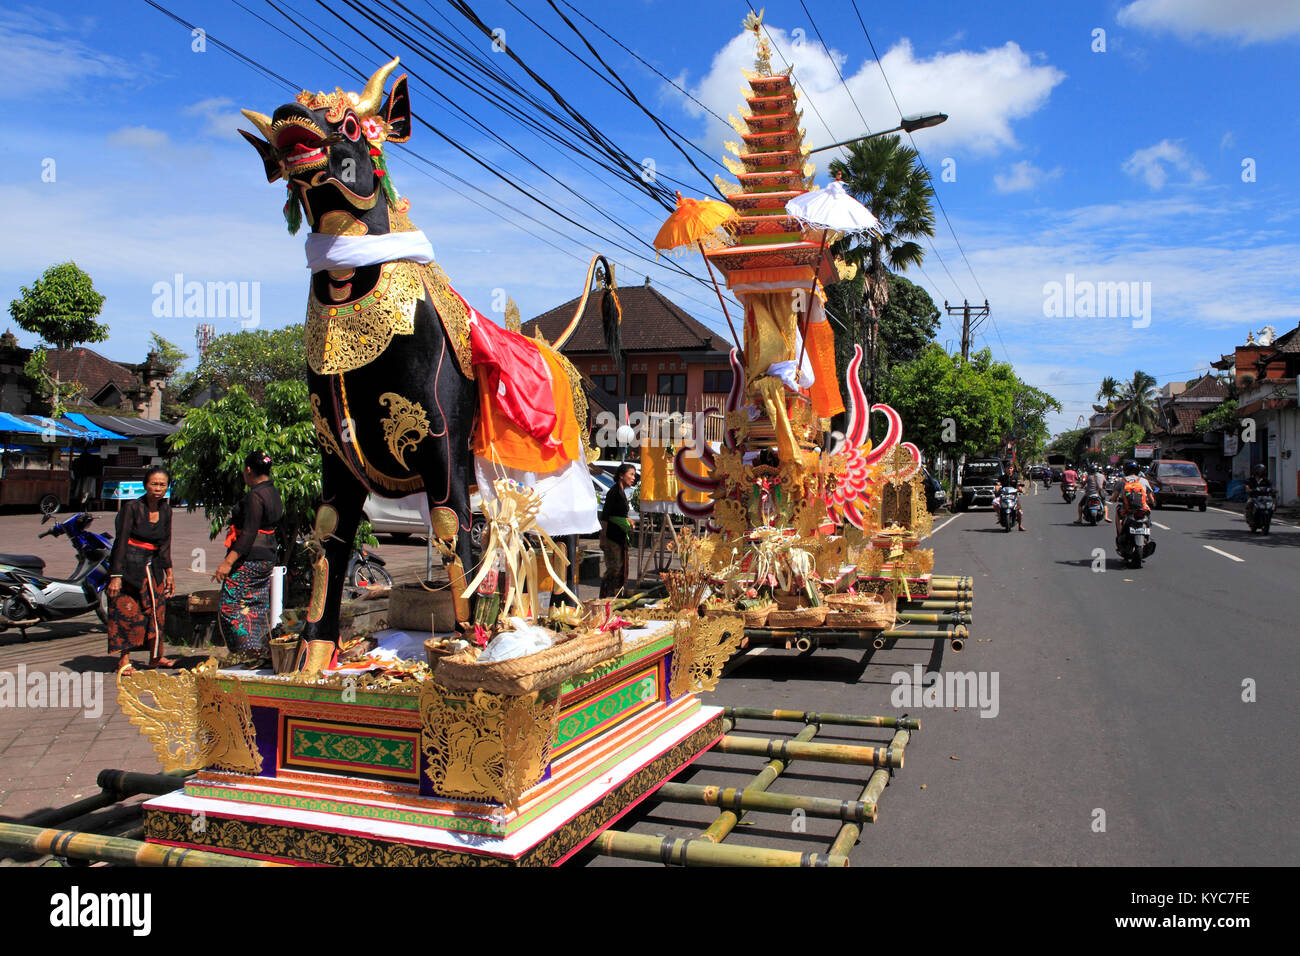 Die einäscherung Bull und Turm auf der Seite der Hauptstraße. Peliatan, Ubud. Verkehr weiterhin an dieser hektischen Straße, wie die Vorbereitungen für die Beerdigung getroffen werden. Stockfoto